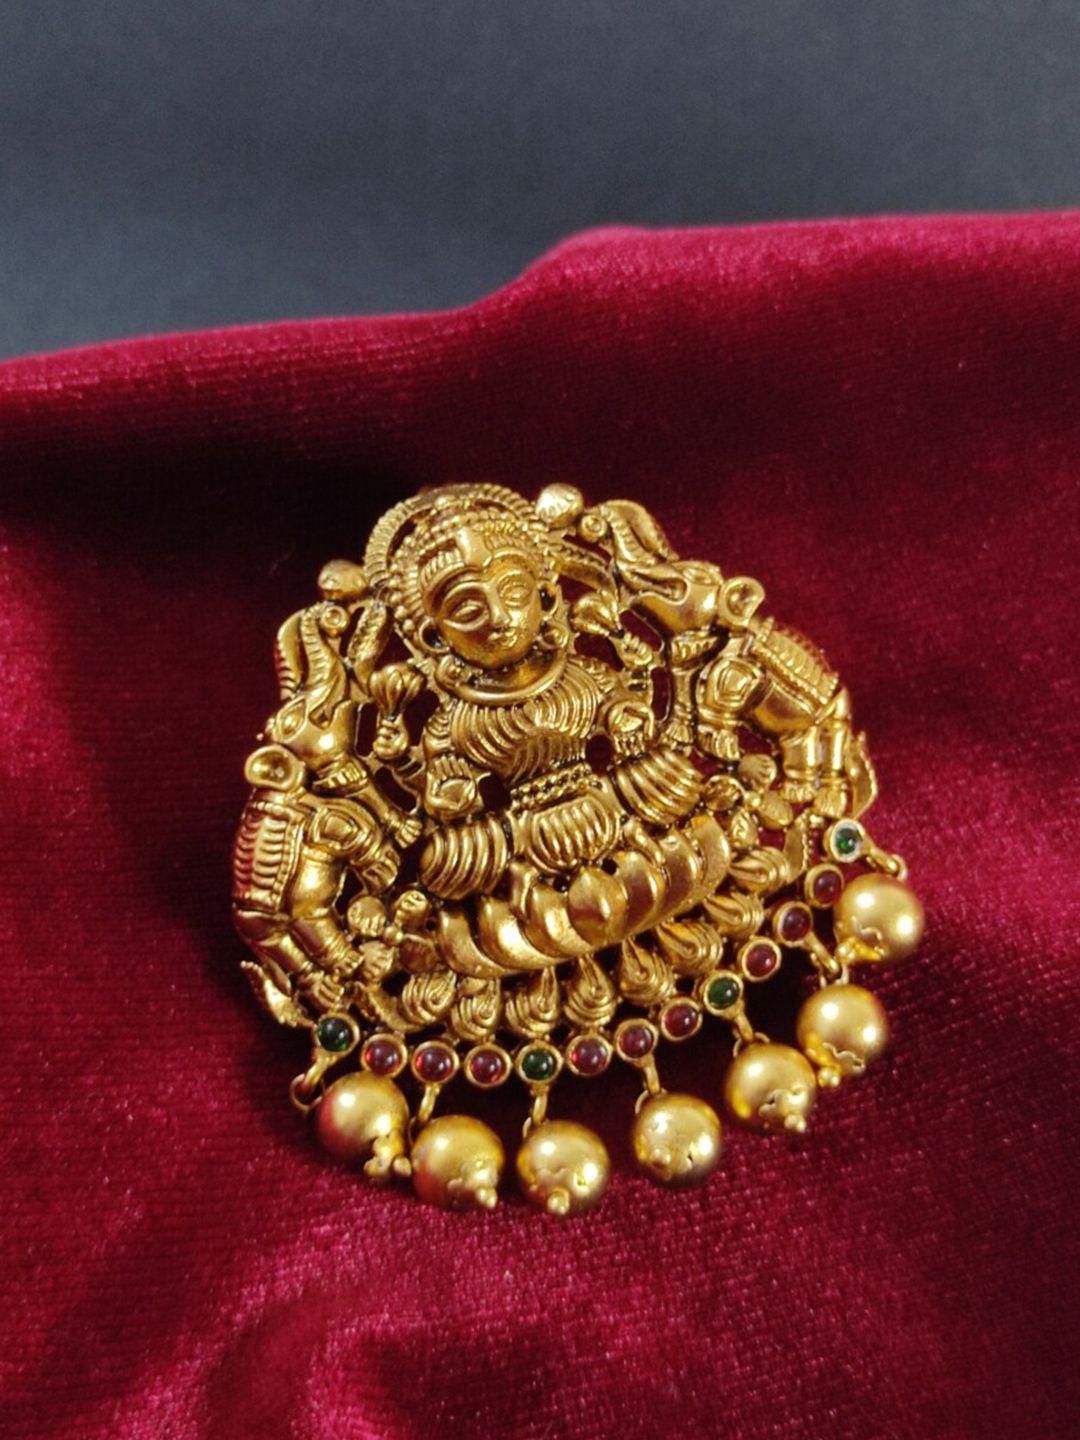 pihtara jewels embellished hair accessory